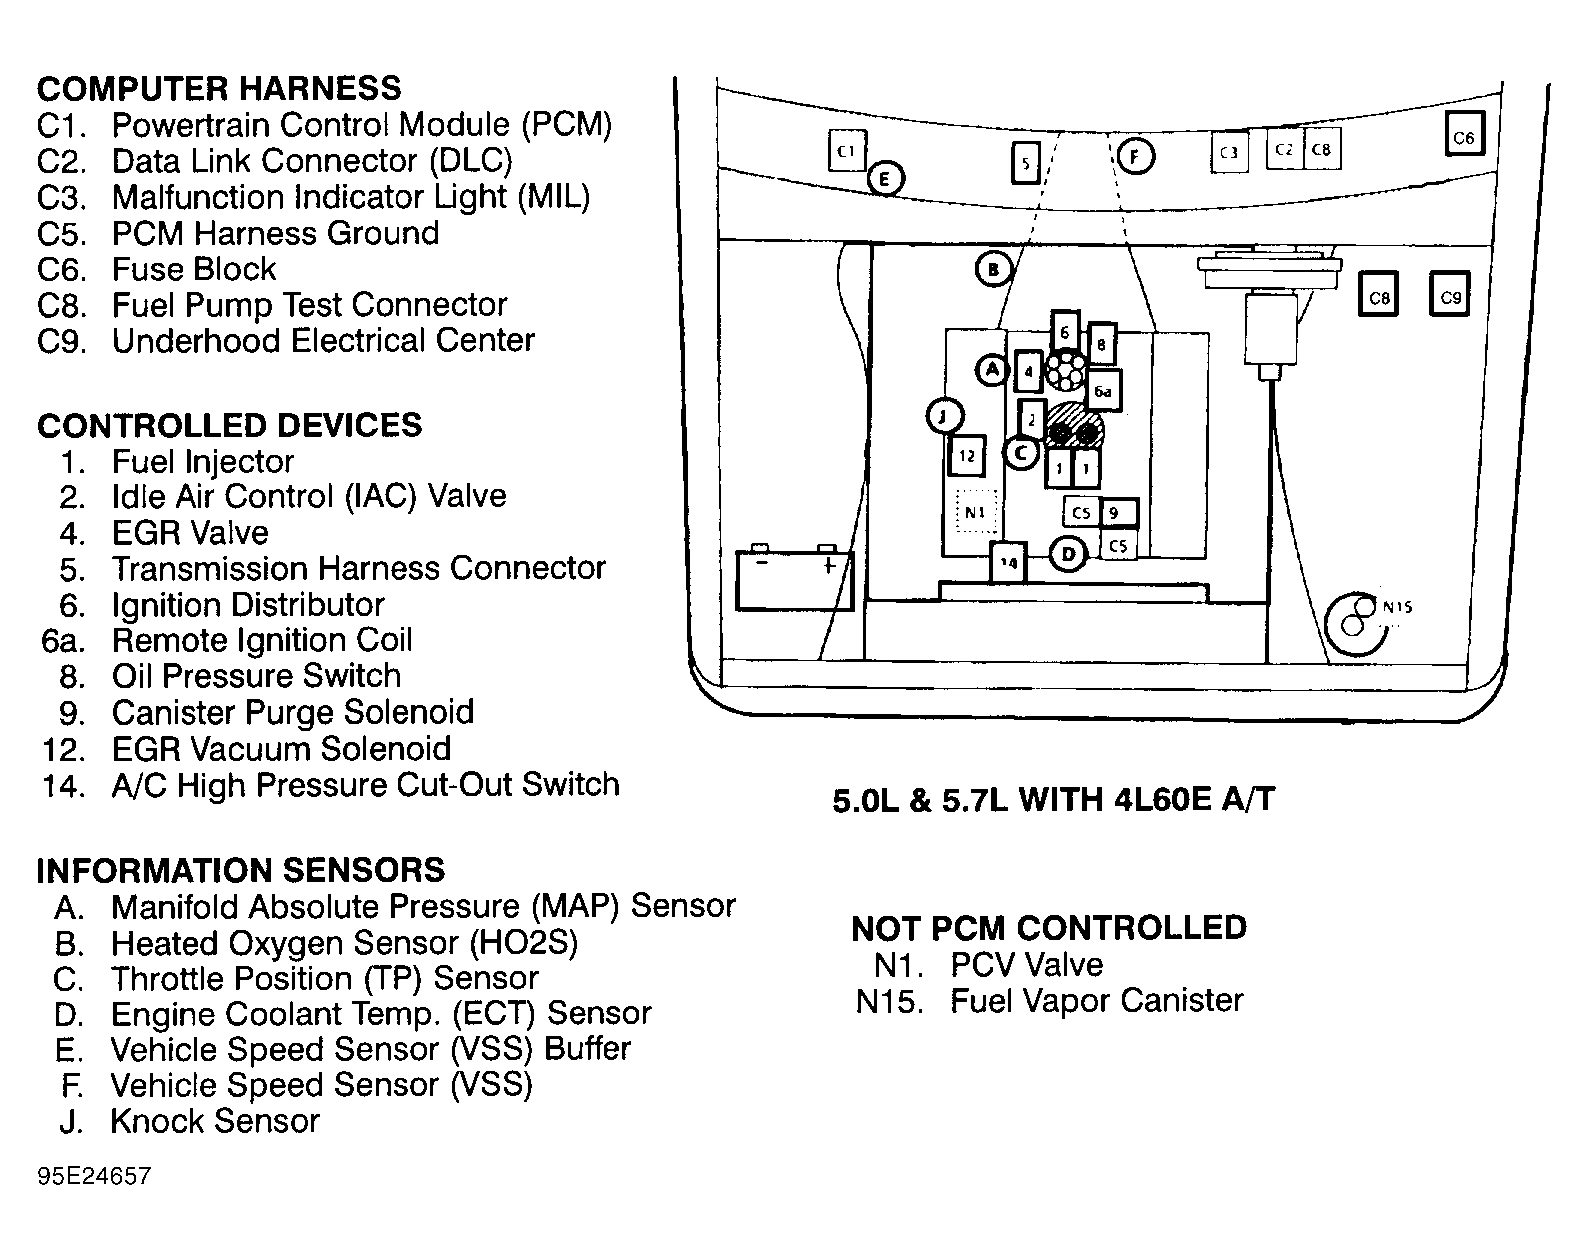 GMC Suburban K1500 1995 - Component Locations -  Engine Compartment (5.0L & 5.7L W/4L60E A/T)